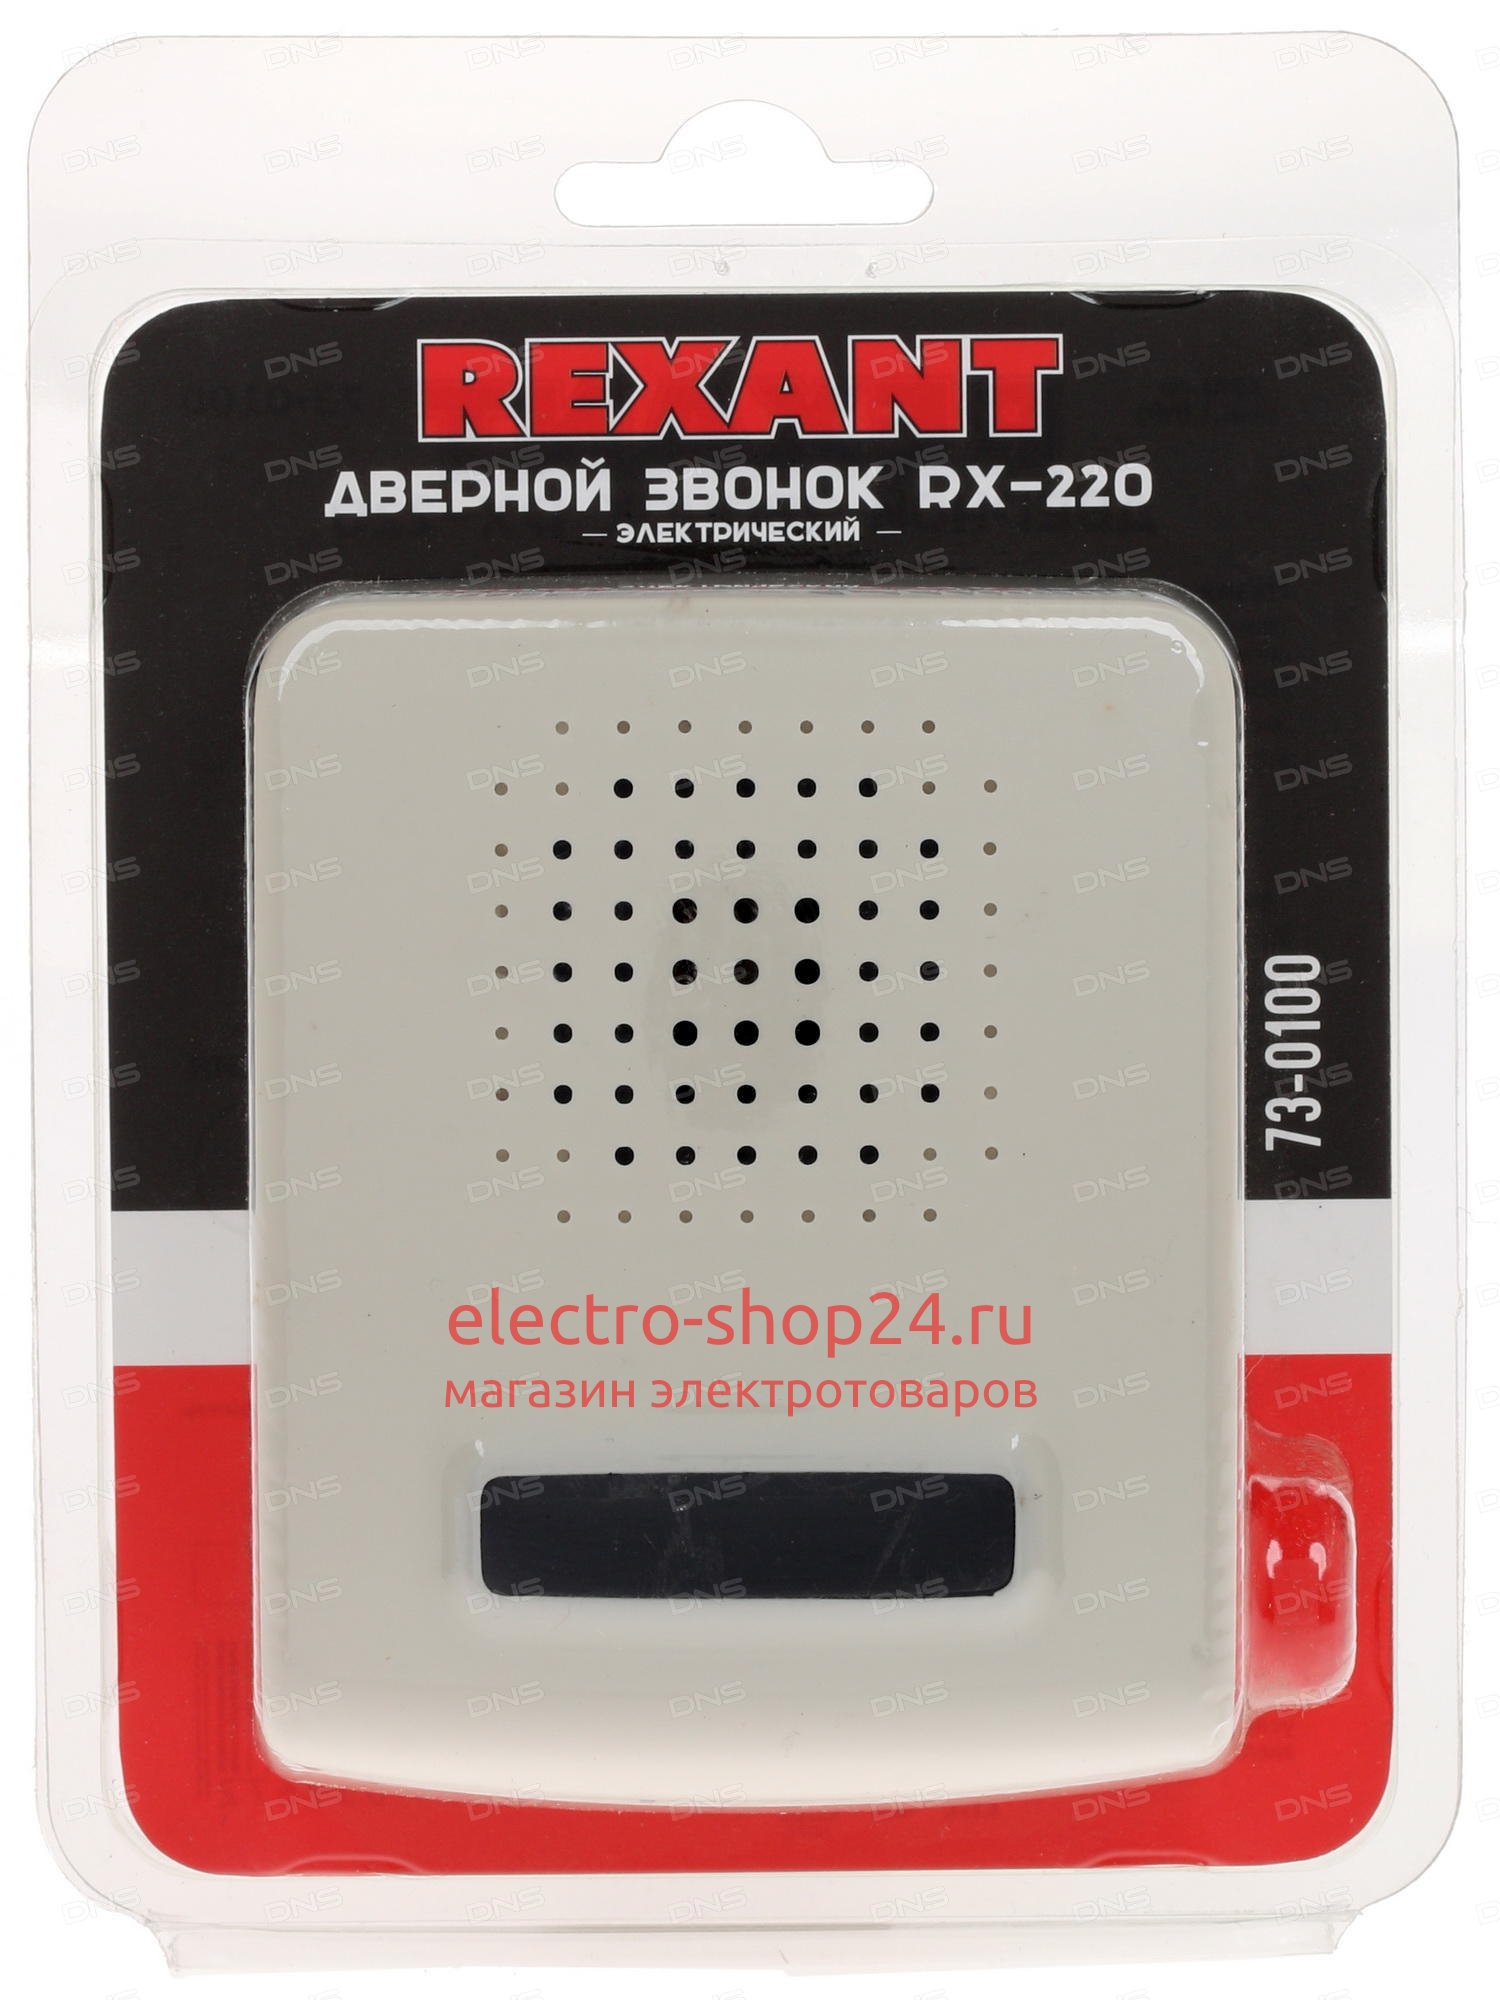 Дверной звонок электрический RX-220 Rexant 73-0100 - магазин электротехники Electroshop